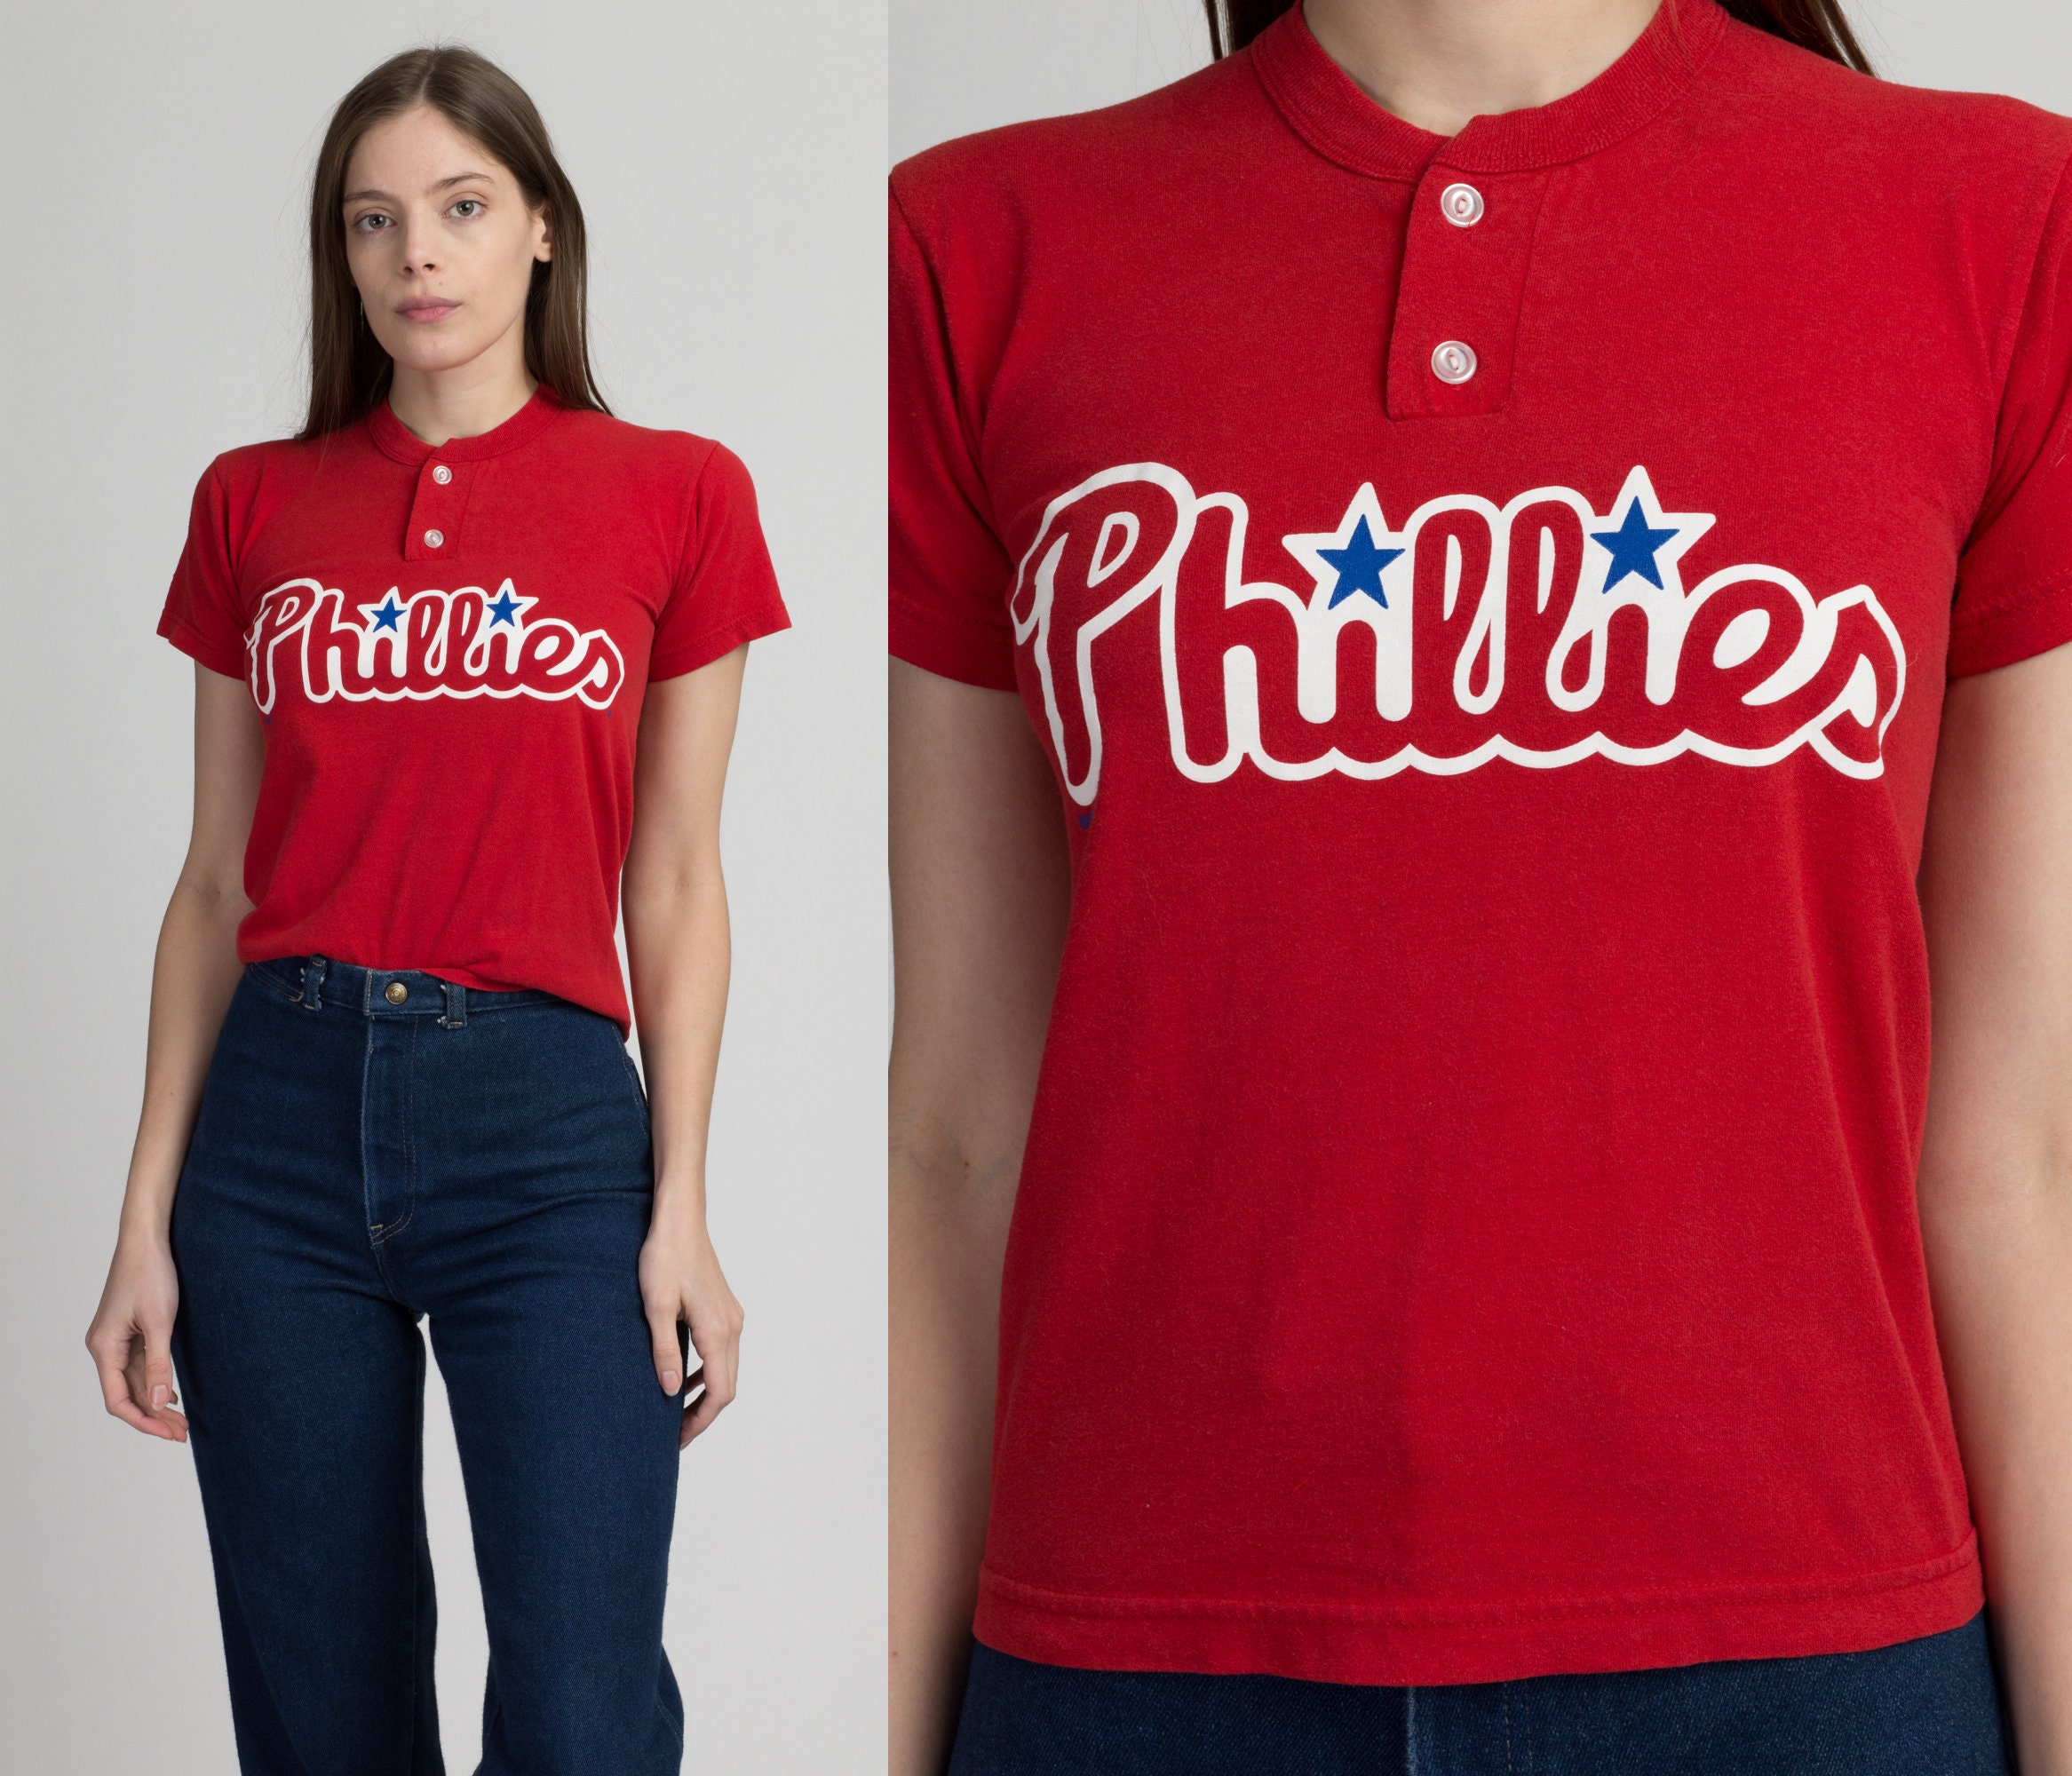  Phillies Toddler T-Shirt - Cute Kawaii Kids' T-Shirt